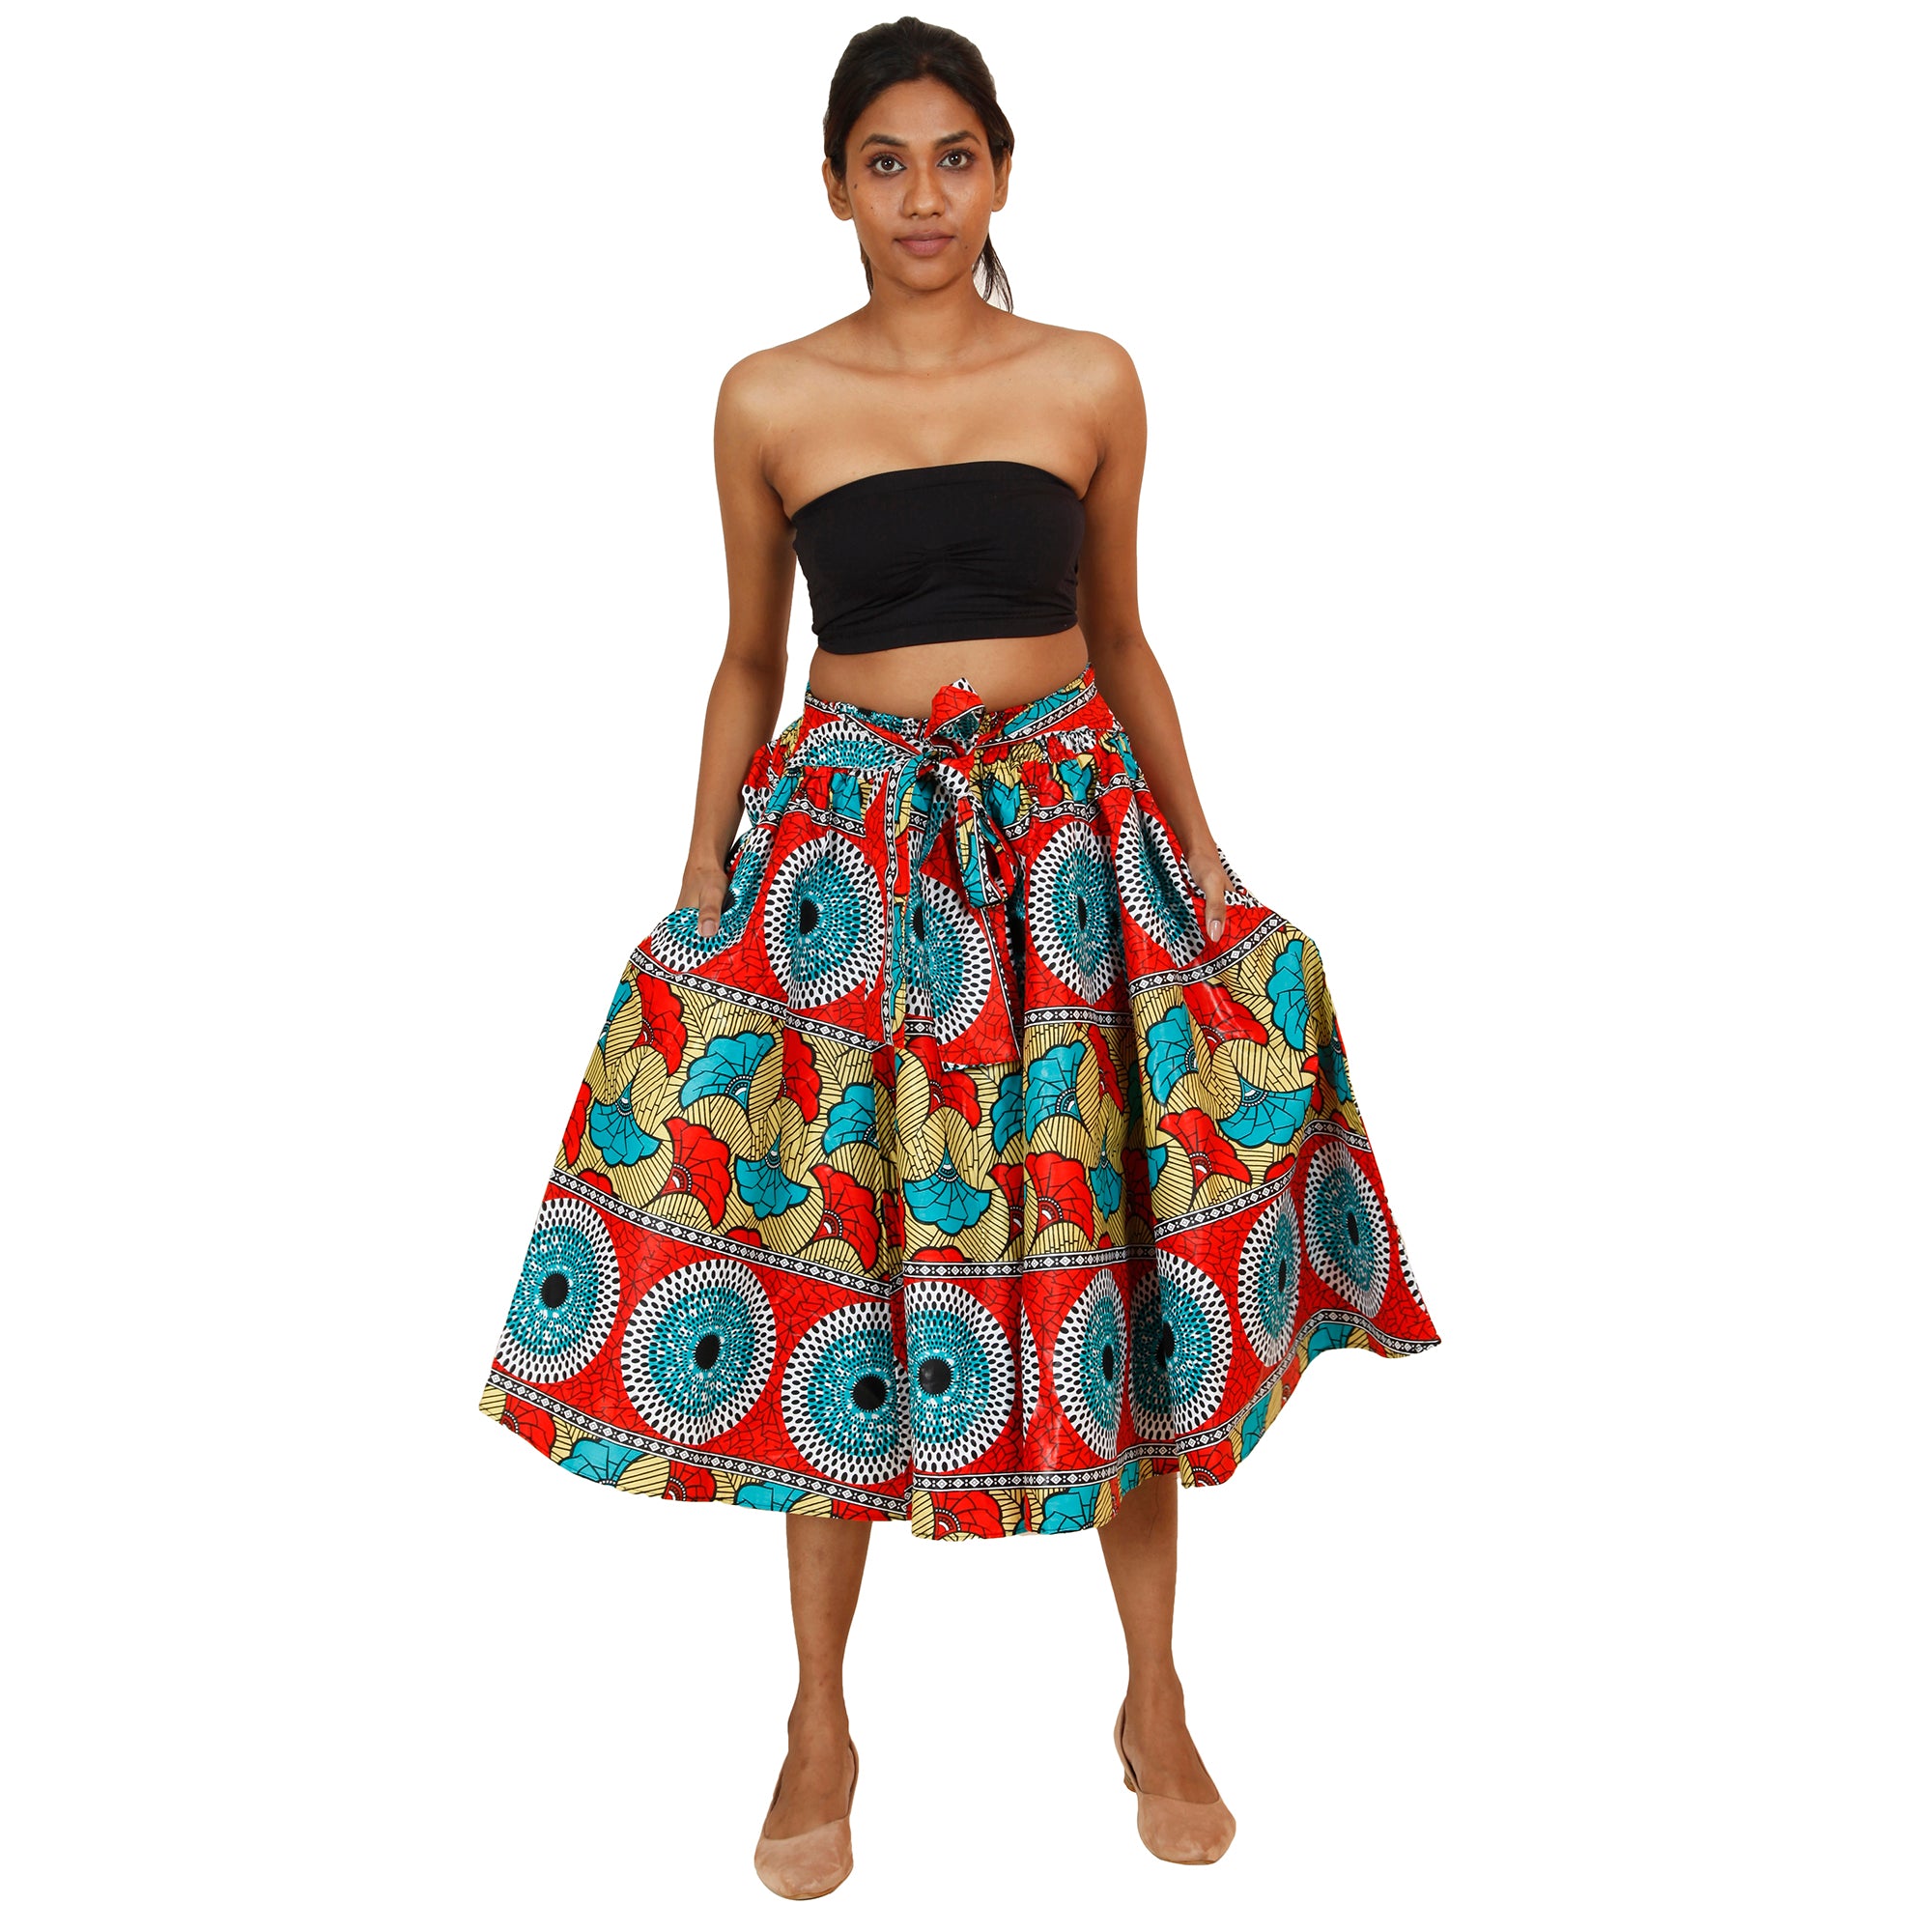 Women's African Printed High Waisted Short Skirt - FI-36